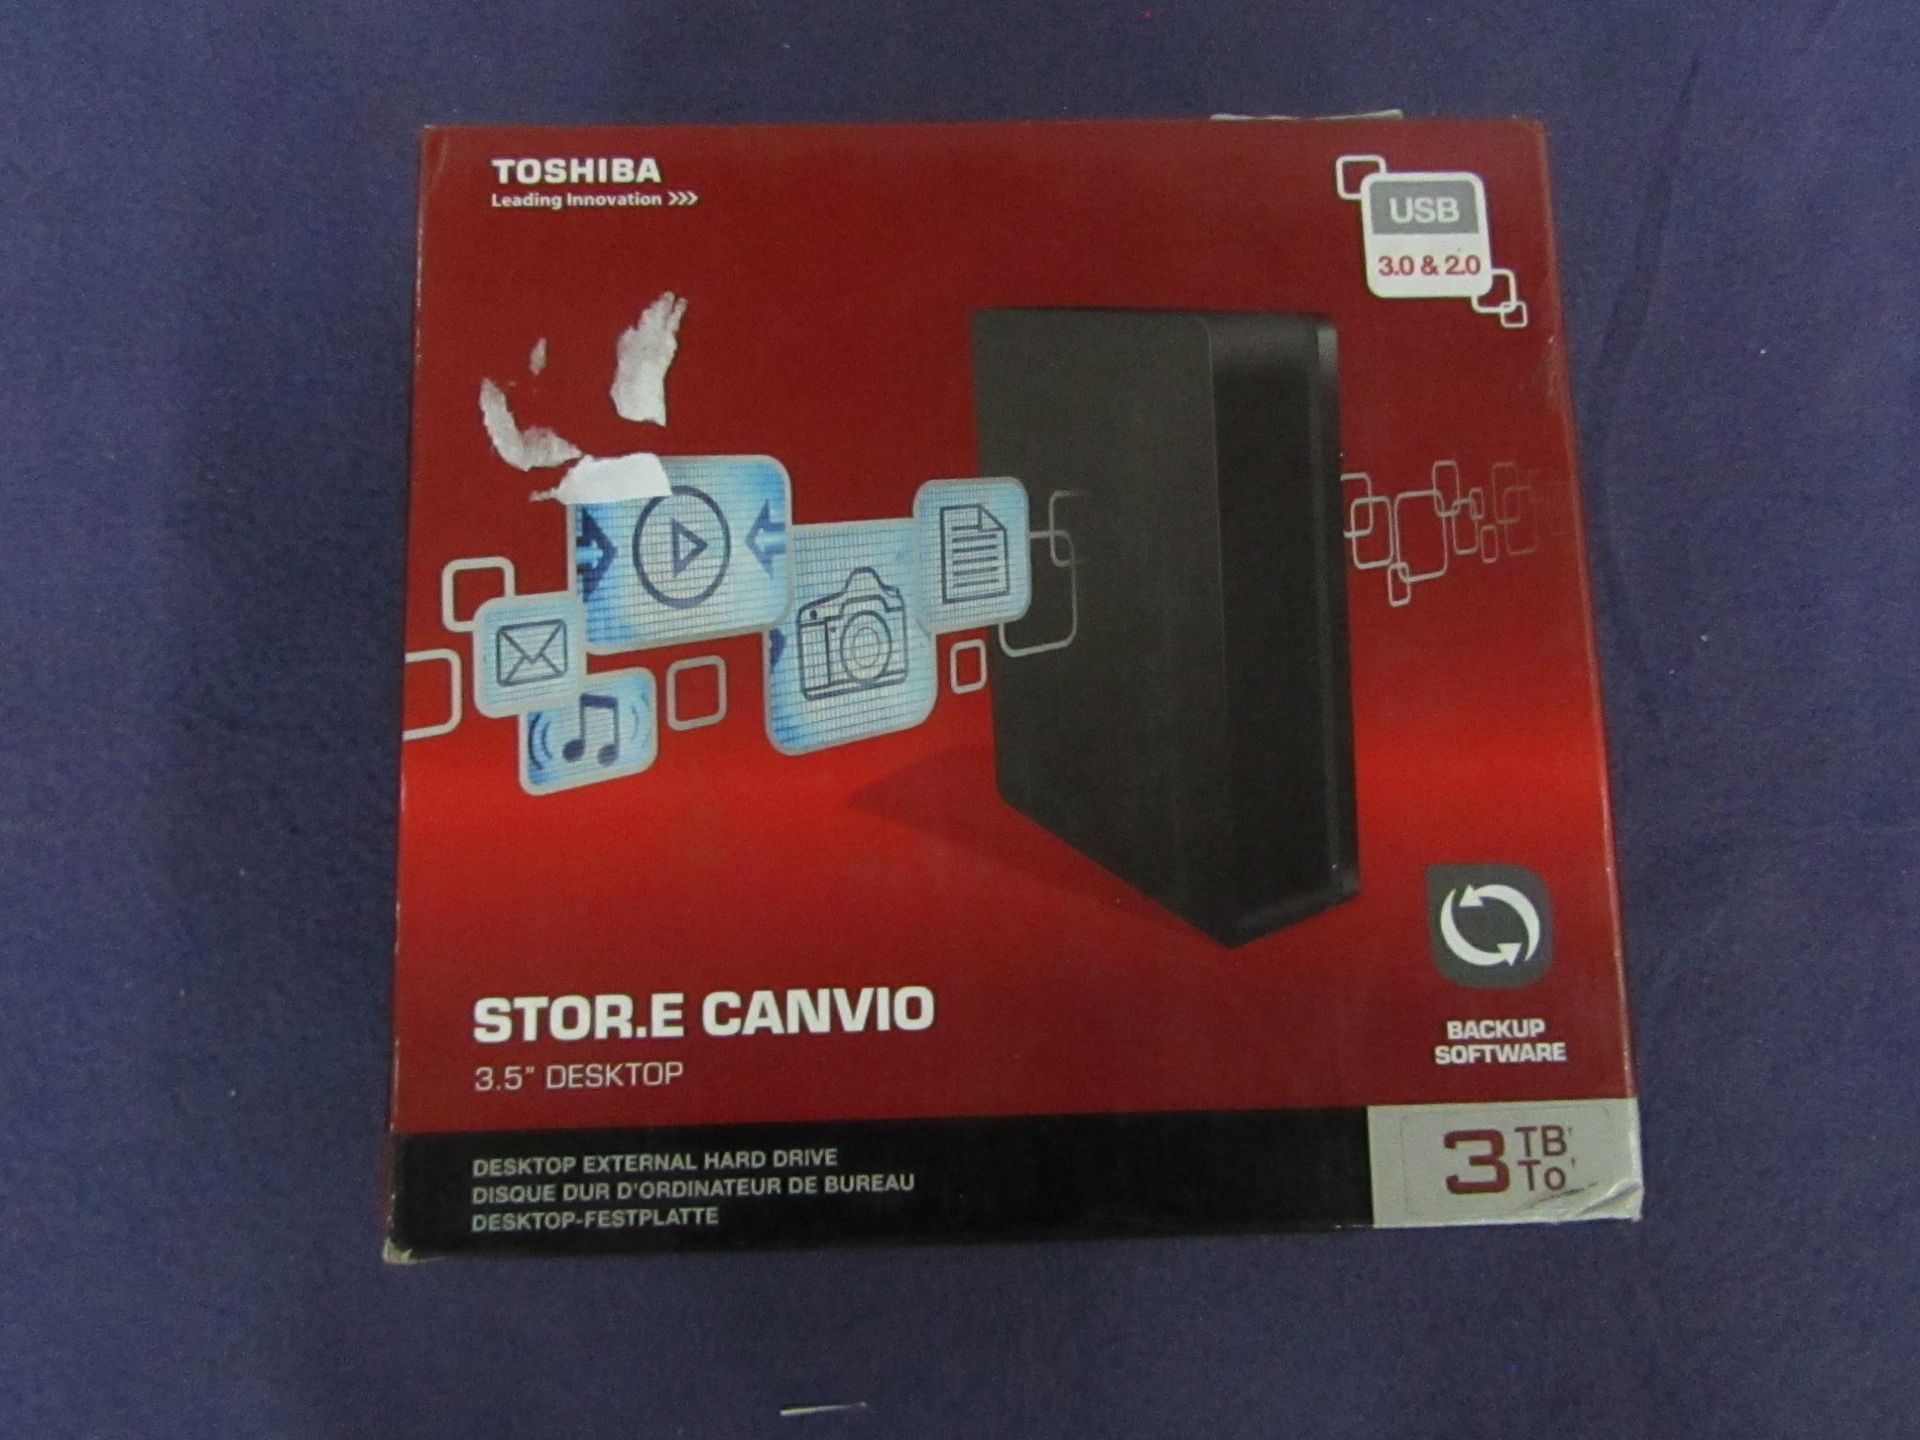 Toshiba - Stor.E Canvio 3TB Desktop Hard Drive - Untested & Boxed.